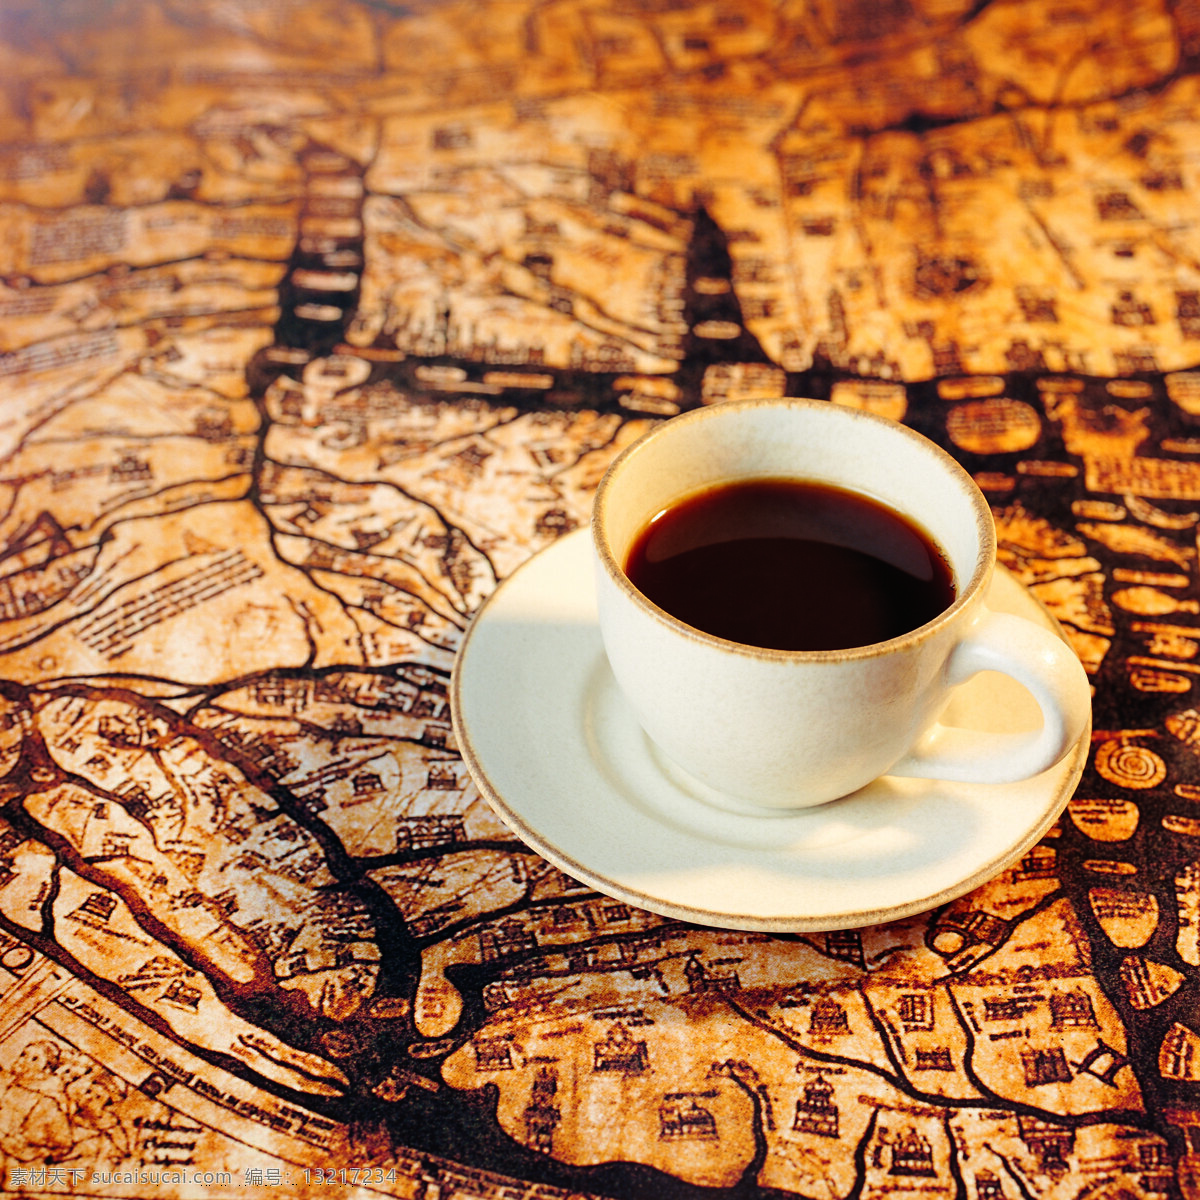 桌子 上 咖啡 特写 餐具 杯子 香浓 咖啡豆 颗粒 饱满 褐色 咖啡原料 高清图片 咖啡图片 餐饮美食